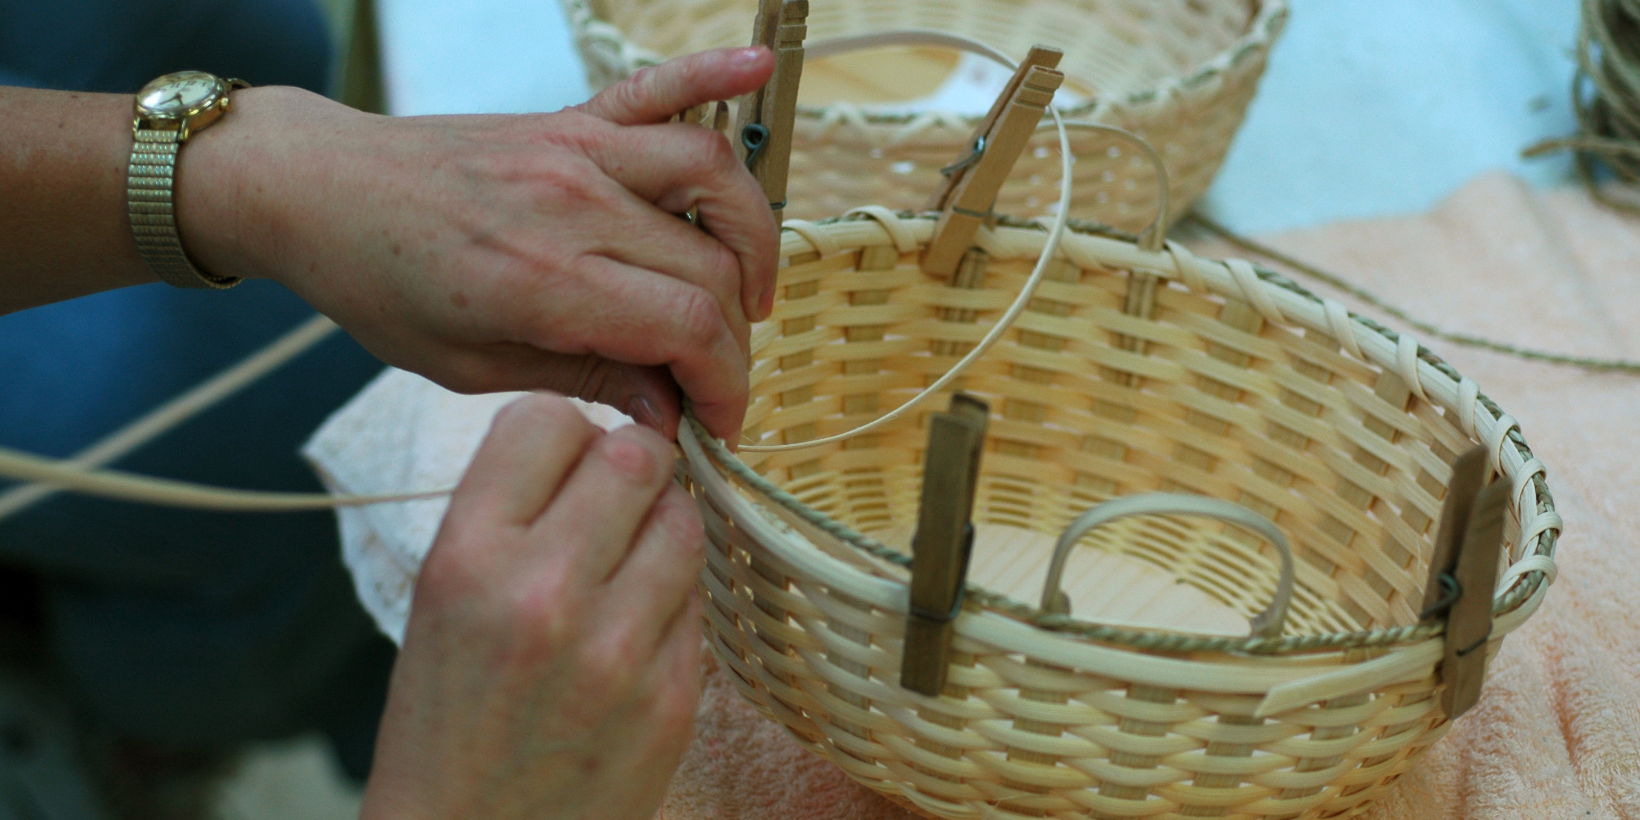 Basket Weaving: Bolt promotional image